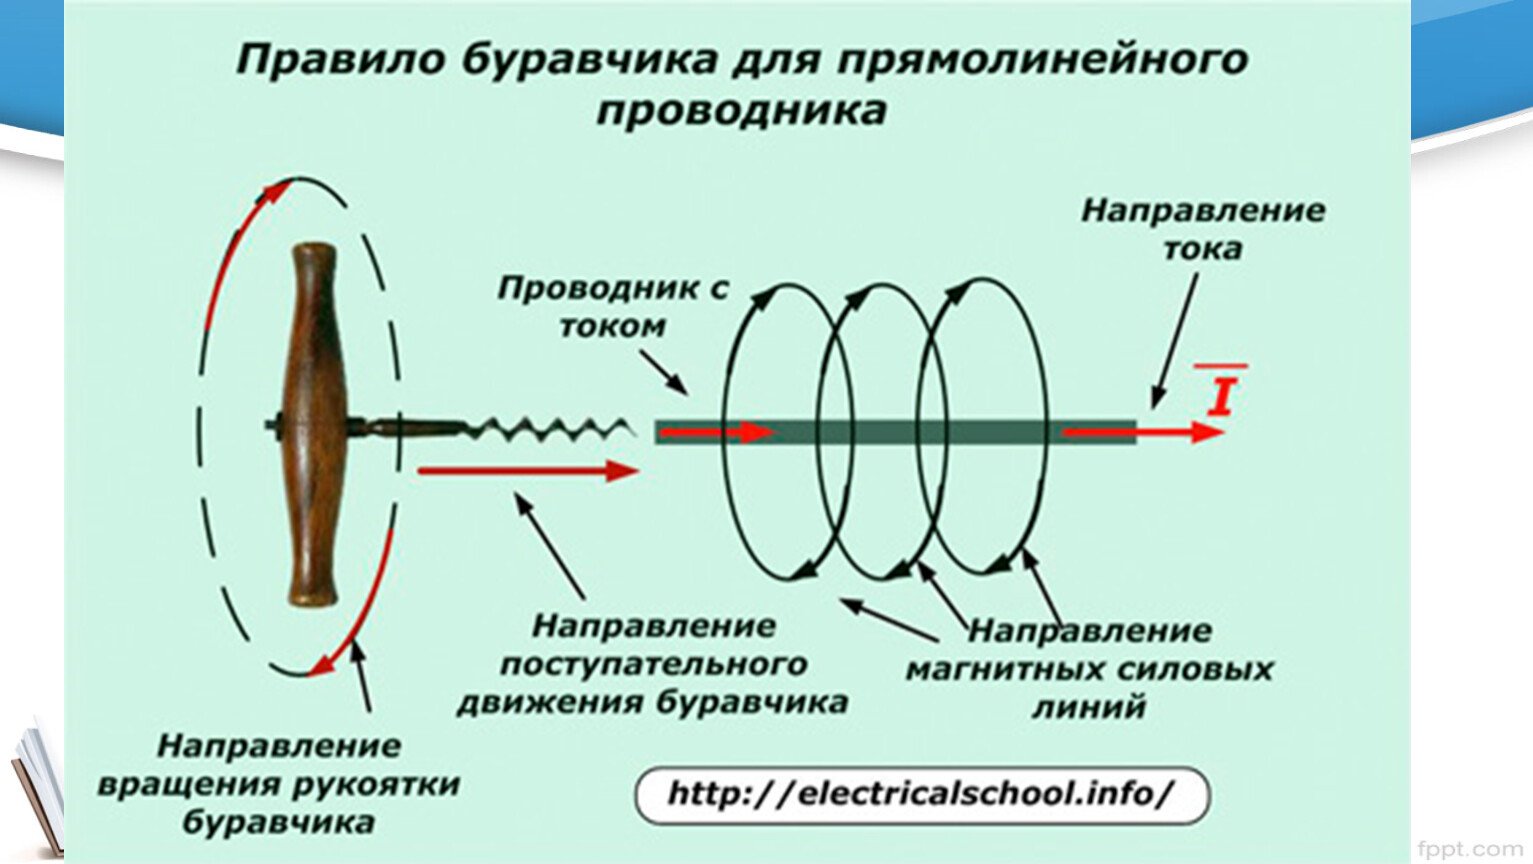 Направление тока в проводнике правило буравчика